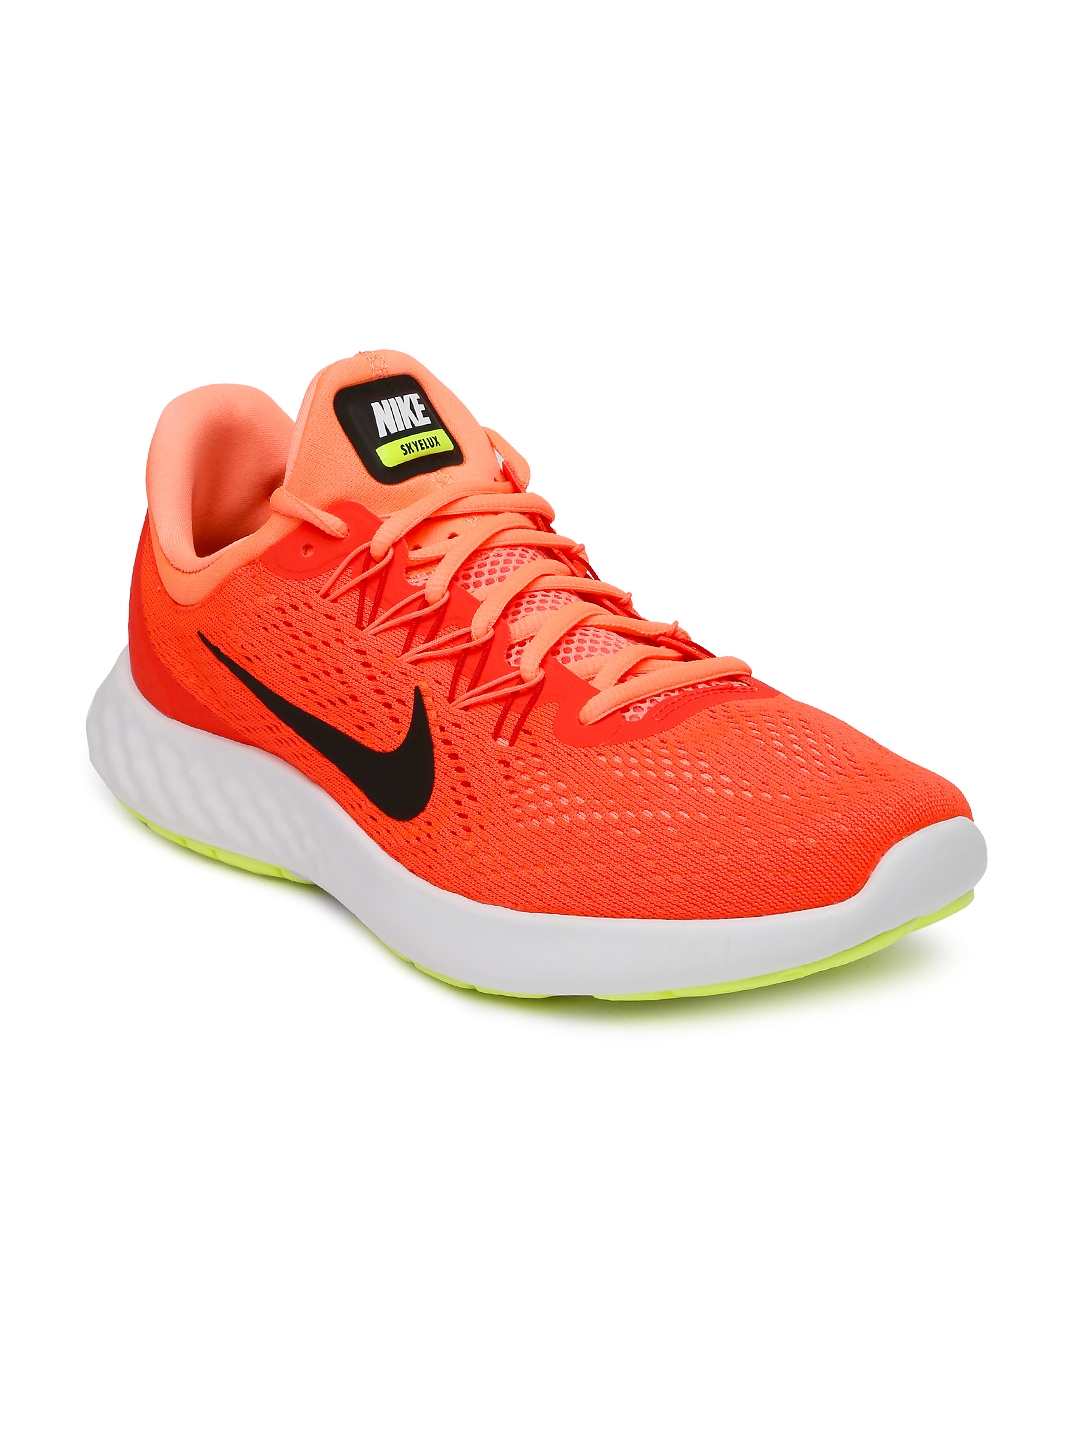 nike running shoes neon orange